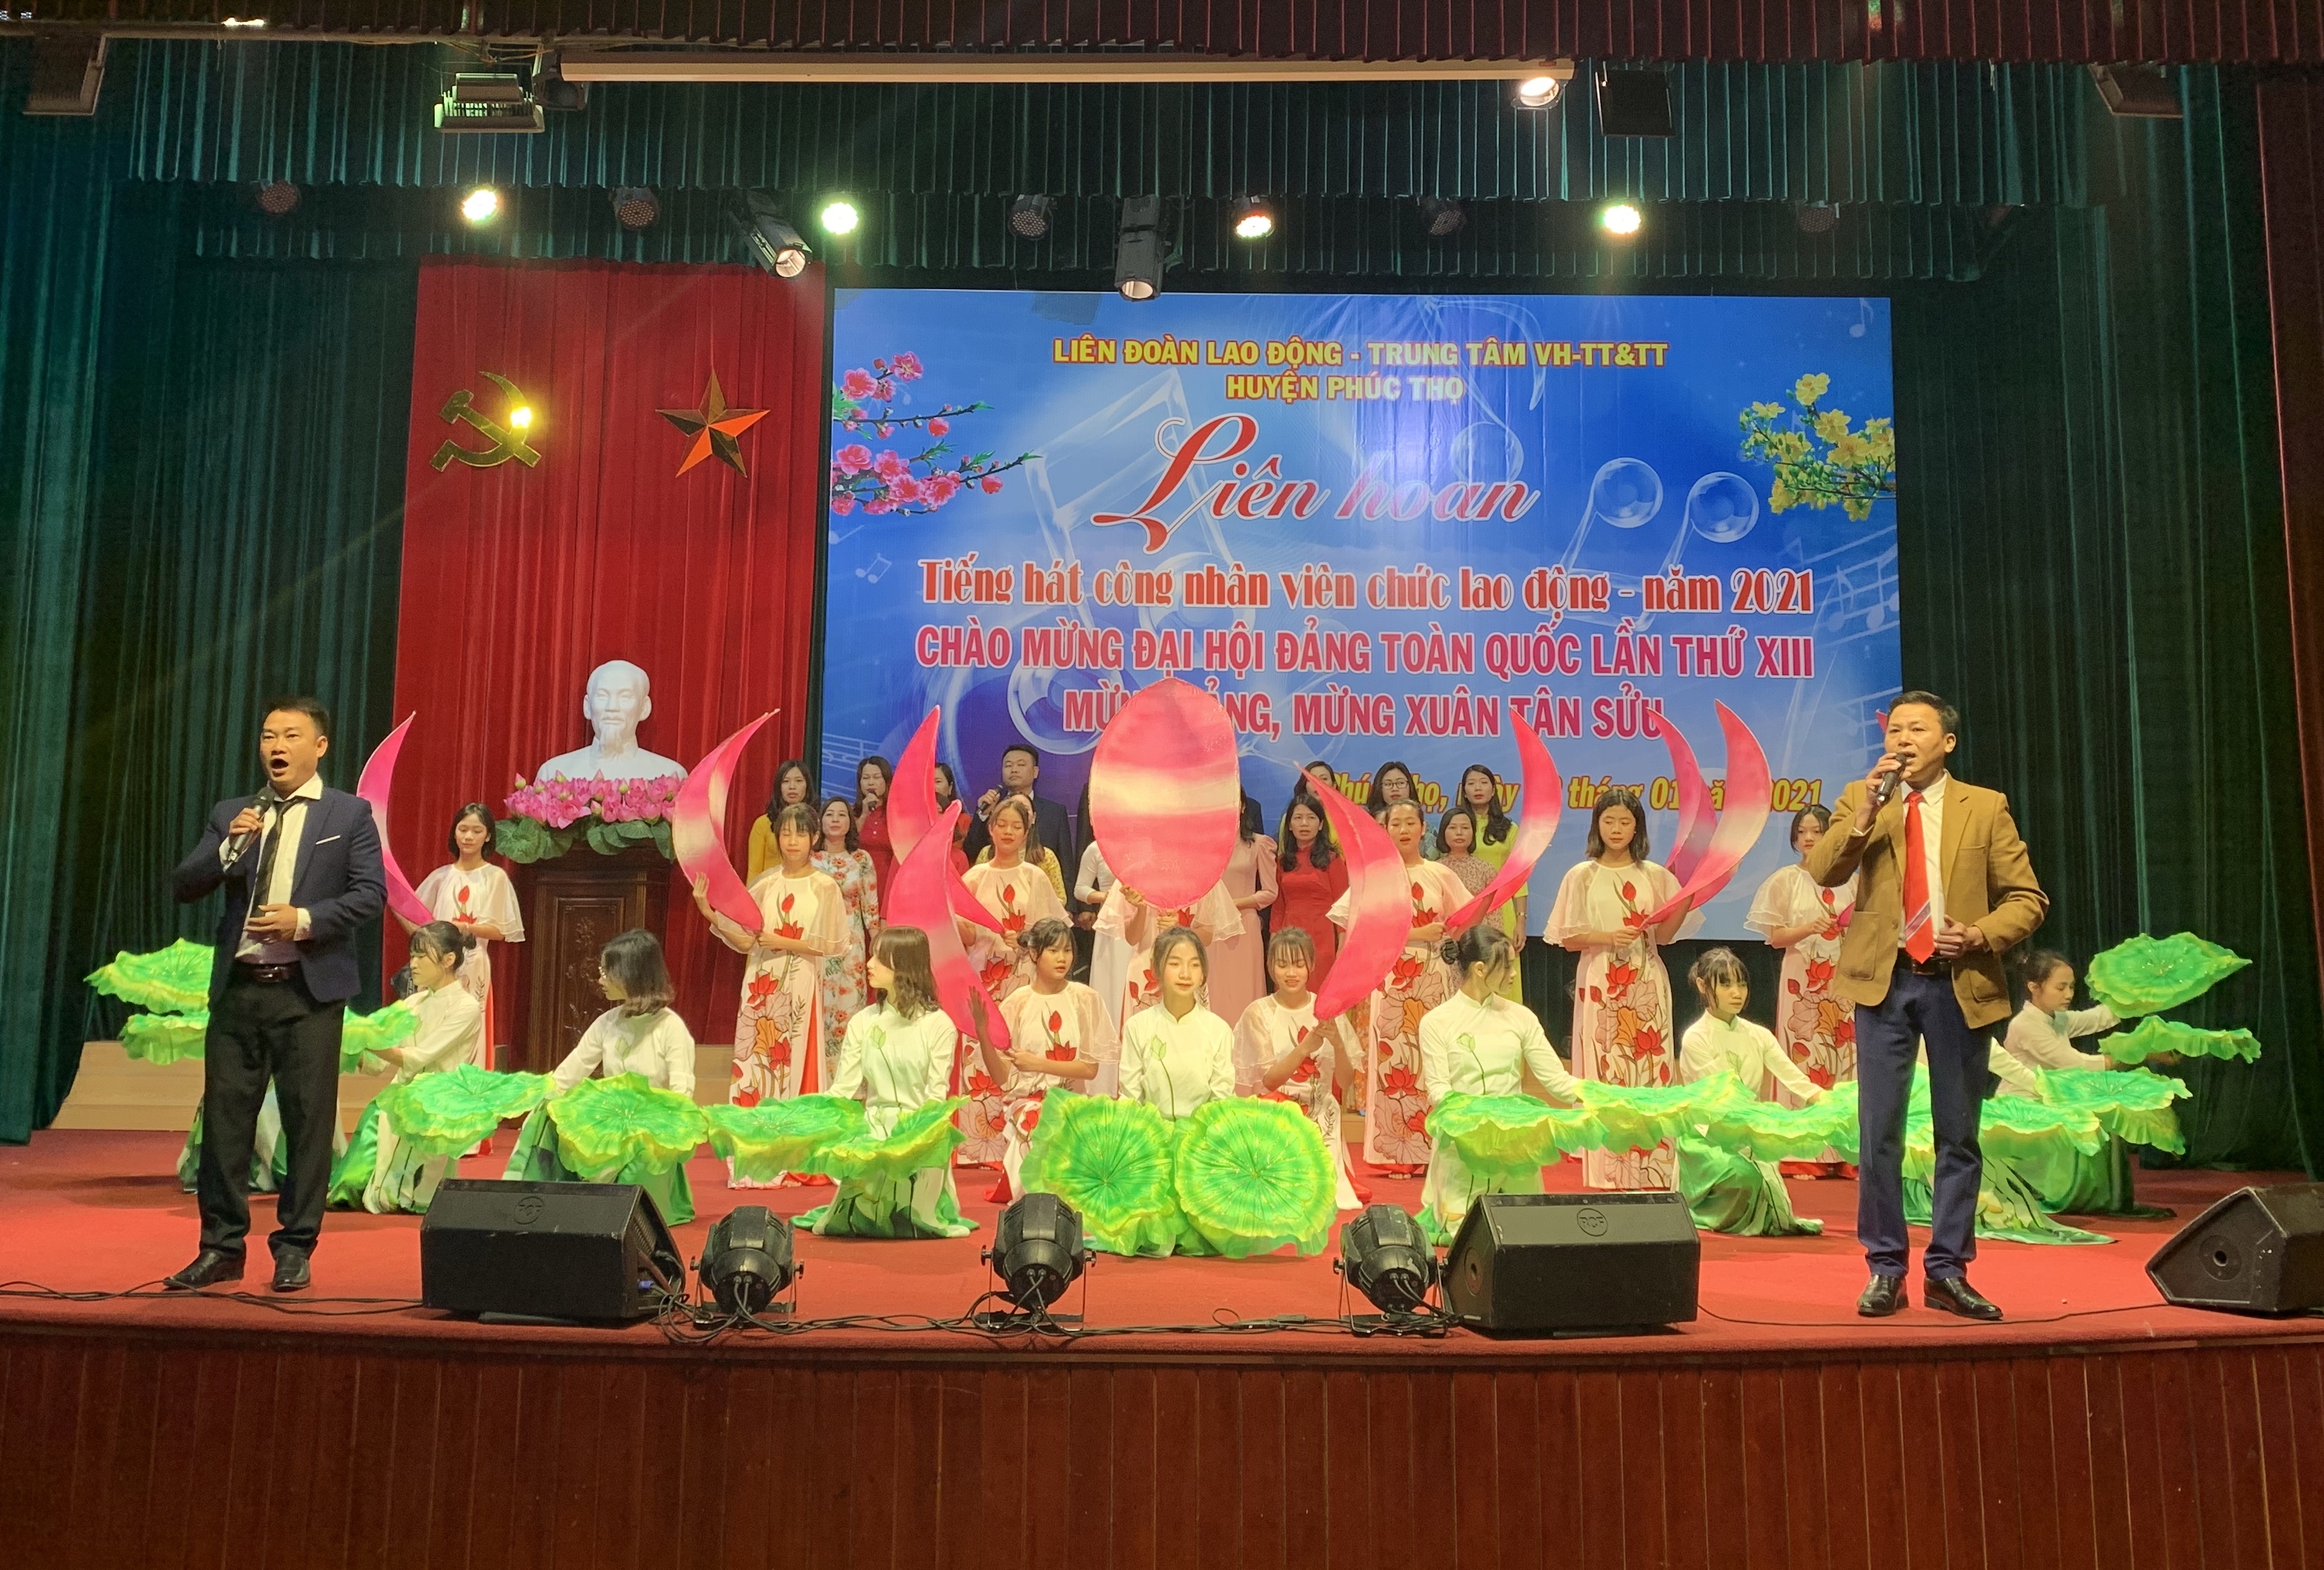 Liên hoan tiếng hát công nhân viên chức lao động huyện Phúc Thọ